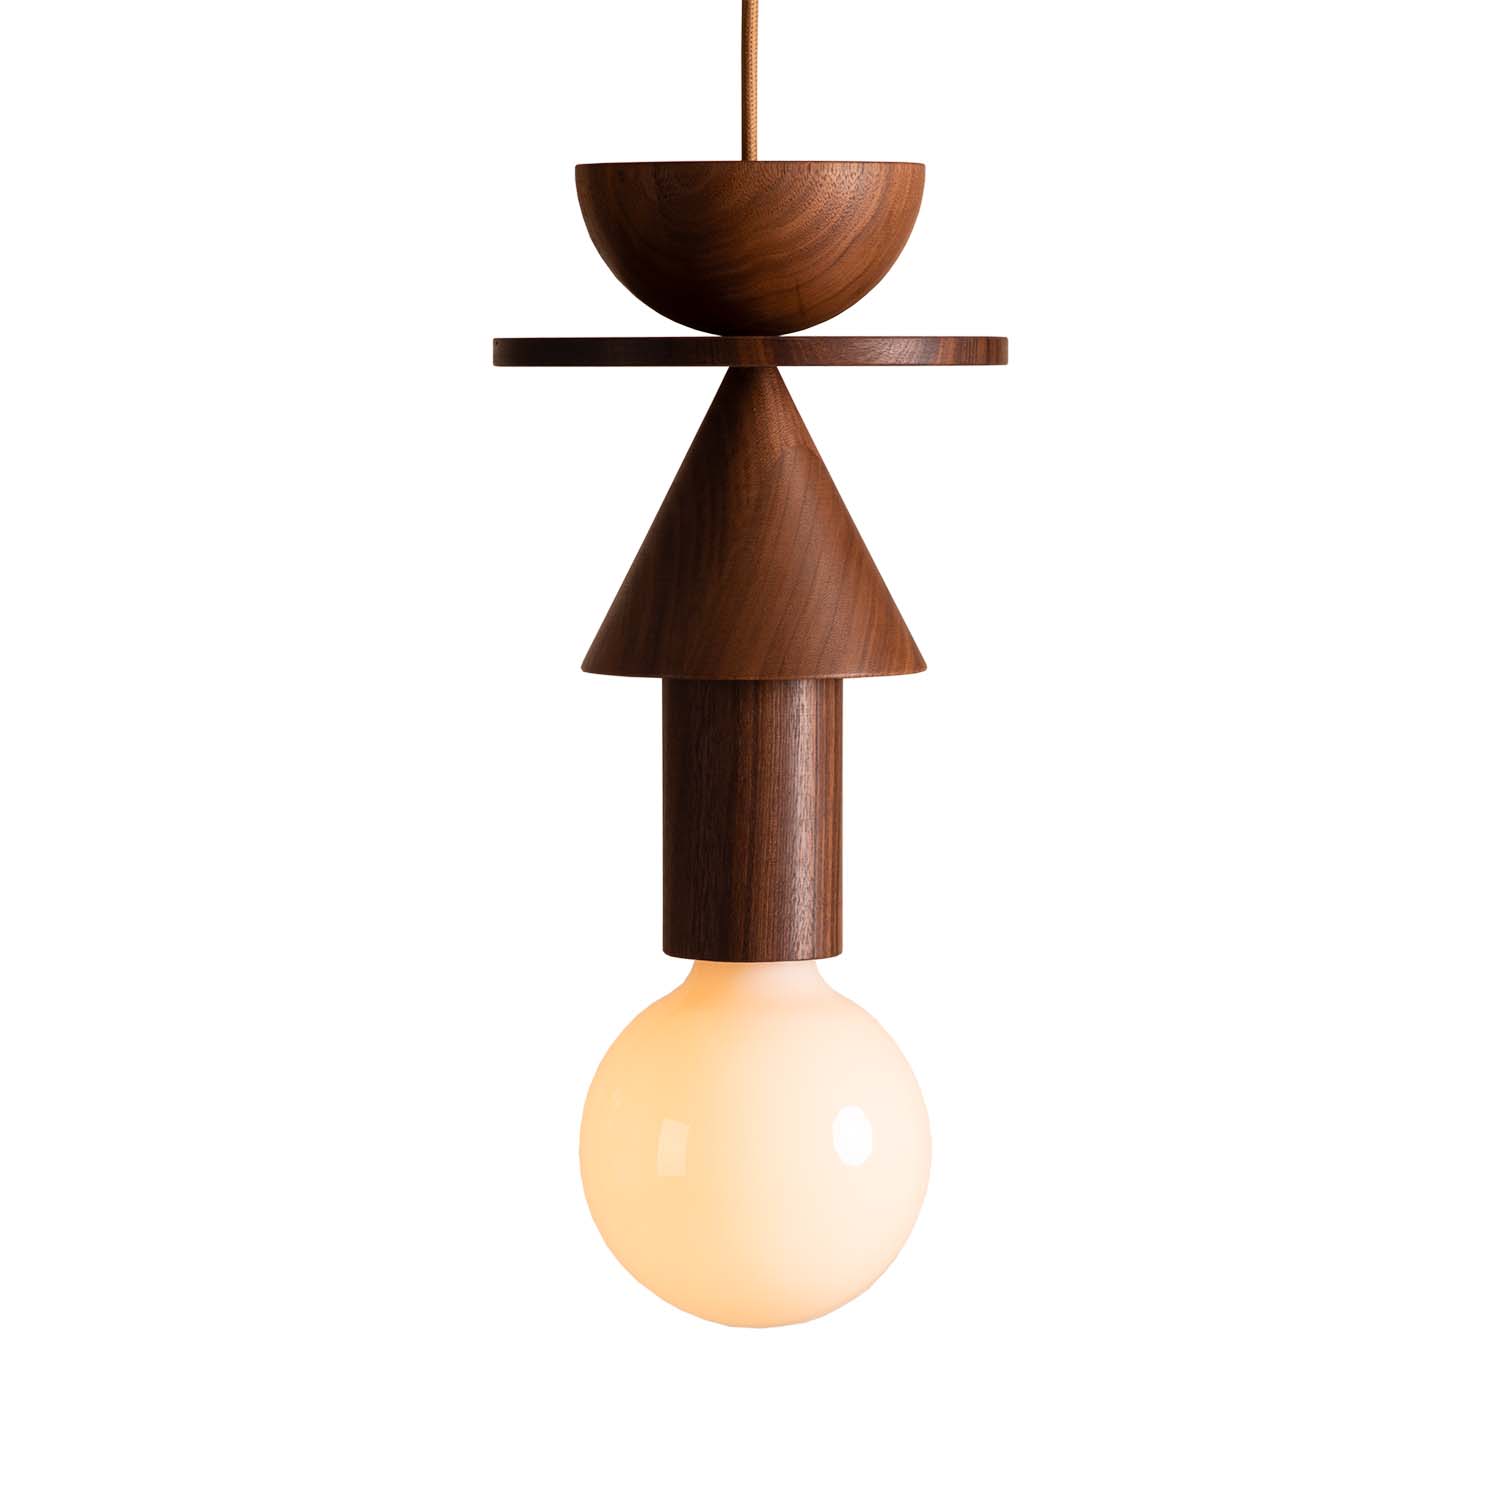 JUNIT WALNUT - Ball-shaped pendant light in walnut wood